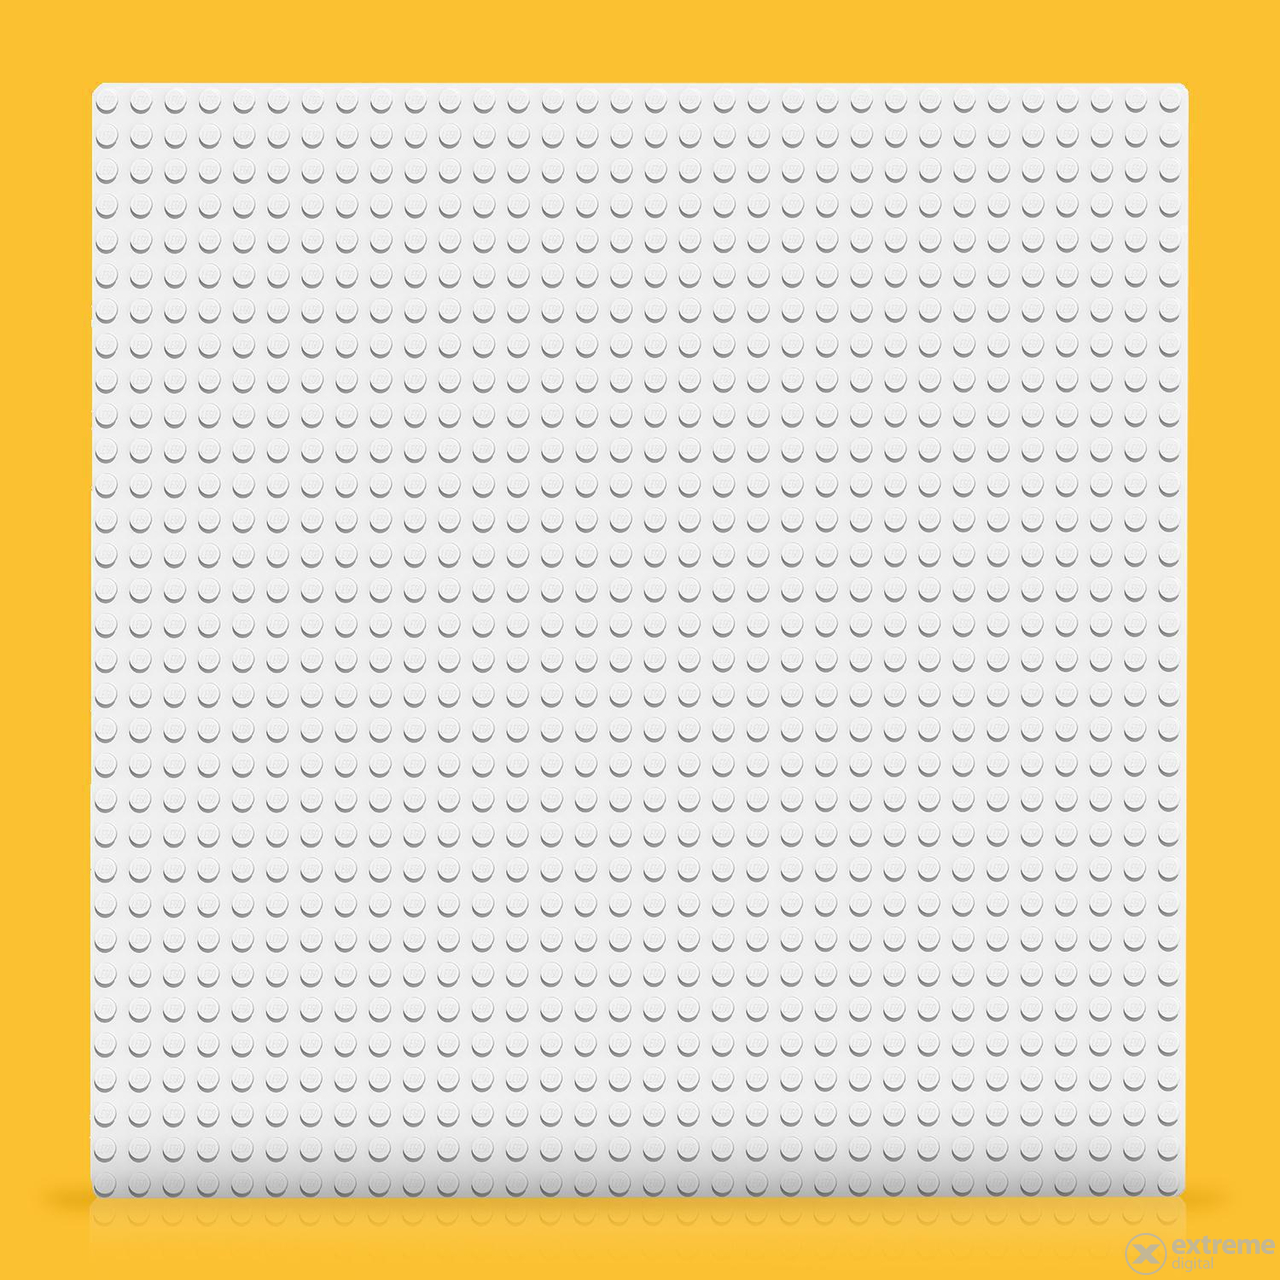 LEGO® Classic 11010 bijela ploča